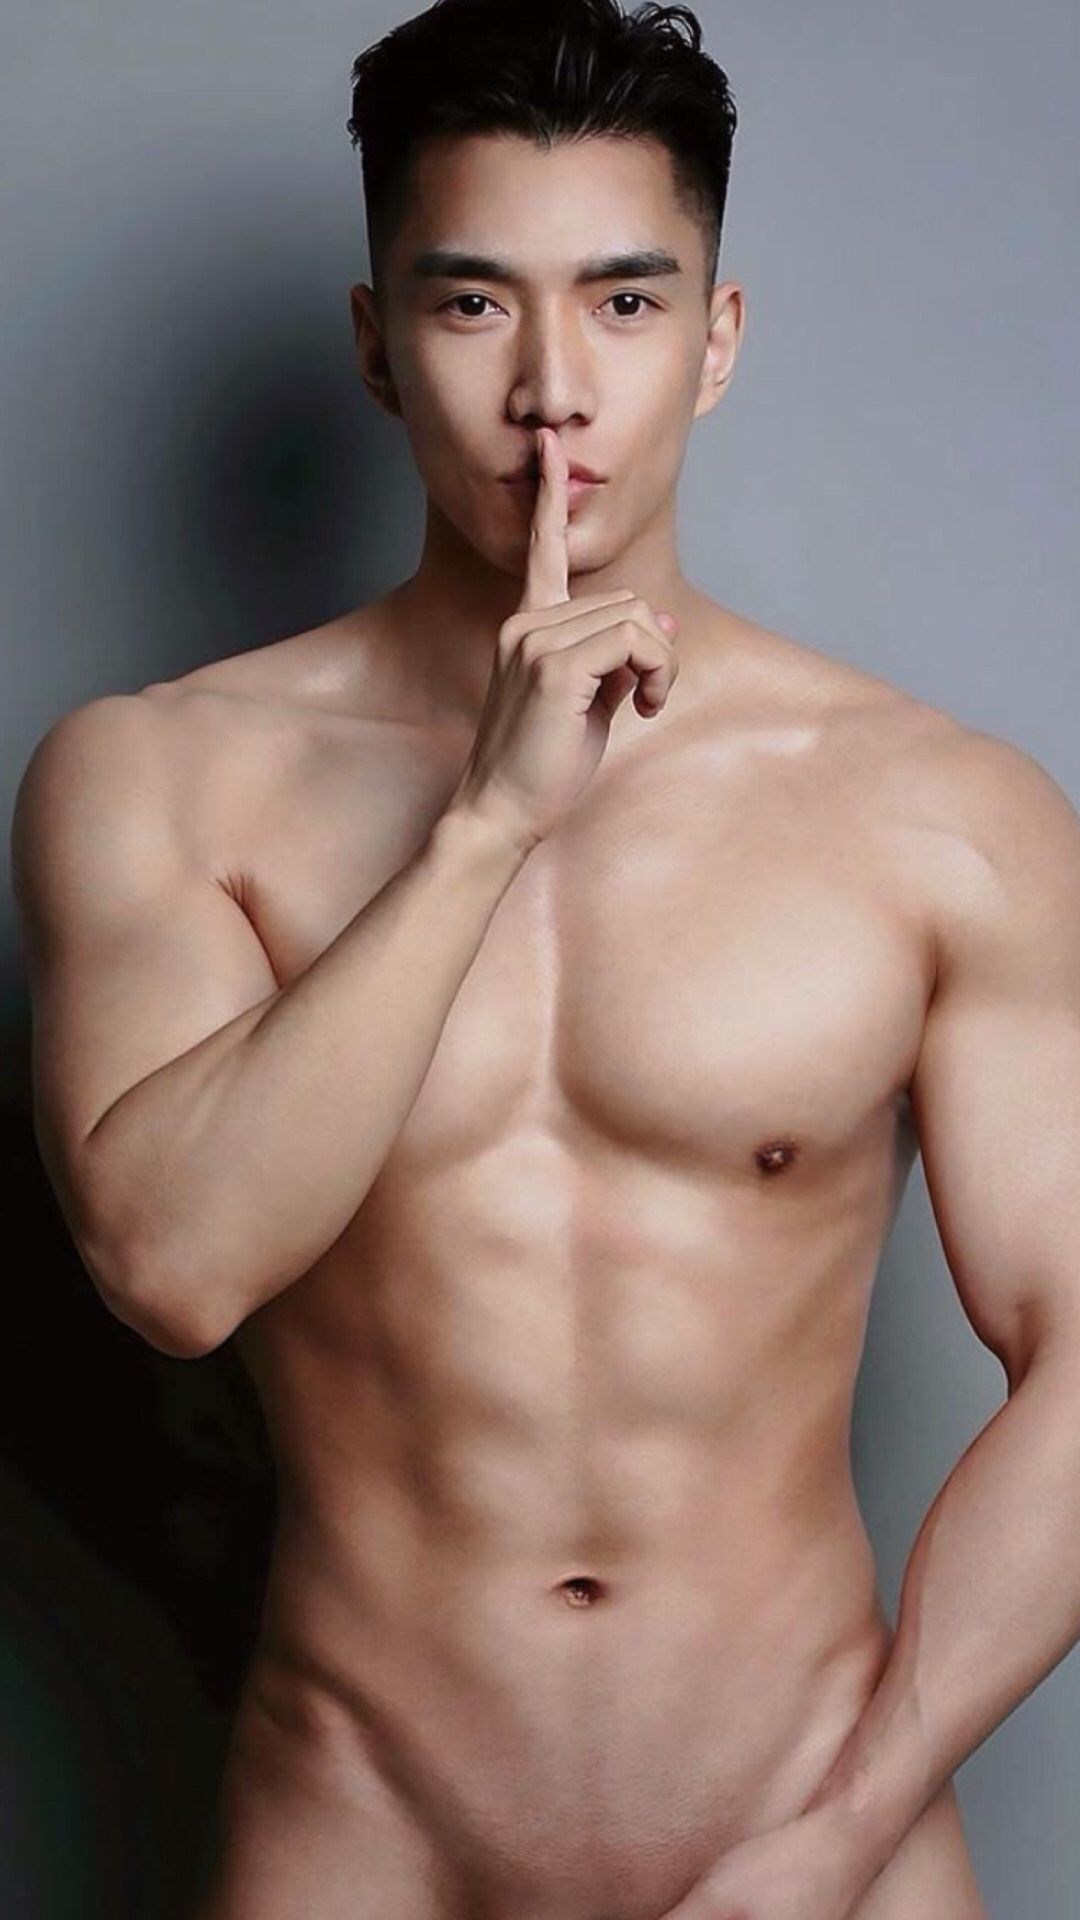 Korean Porn Actor - Korean Male Actor (67 photos) - porn photo